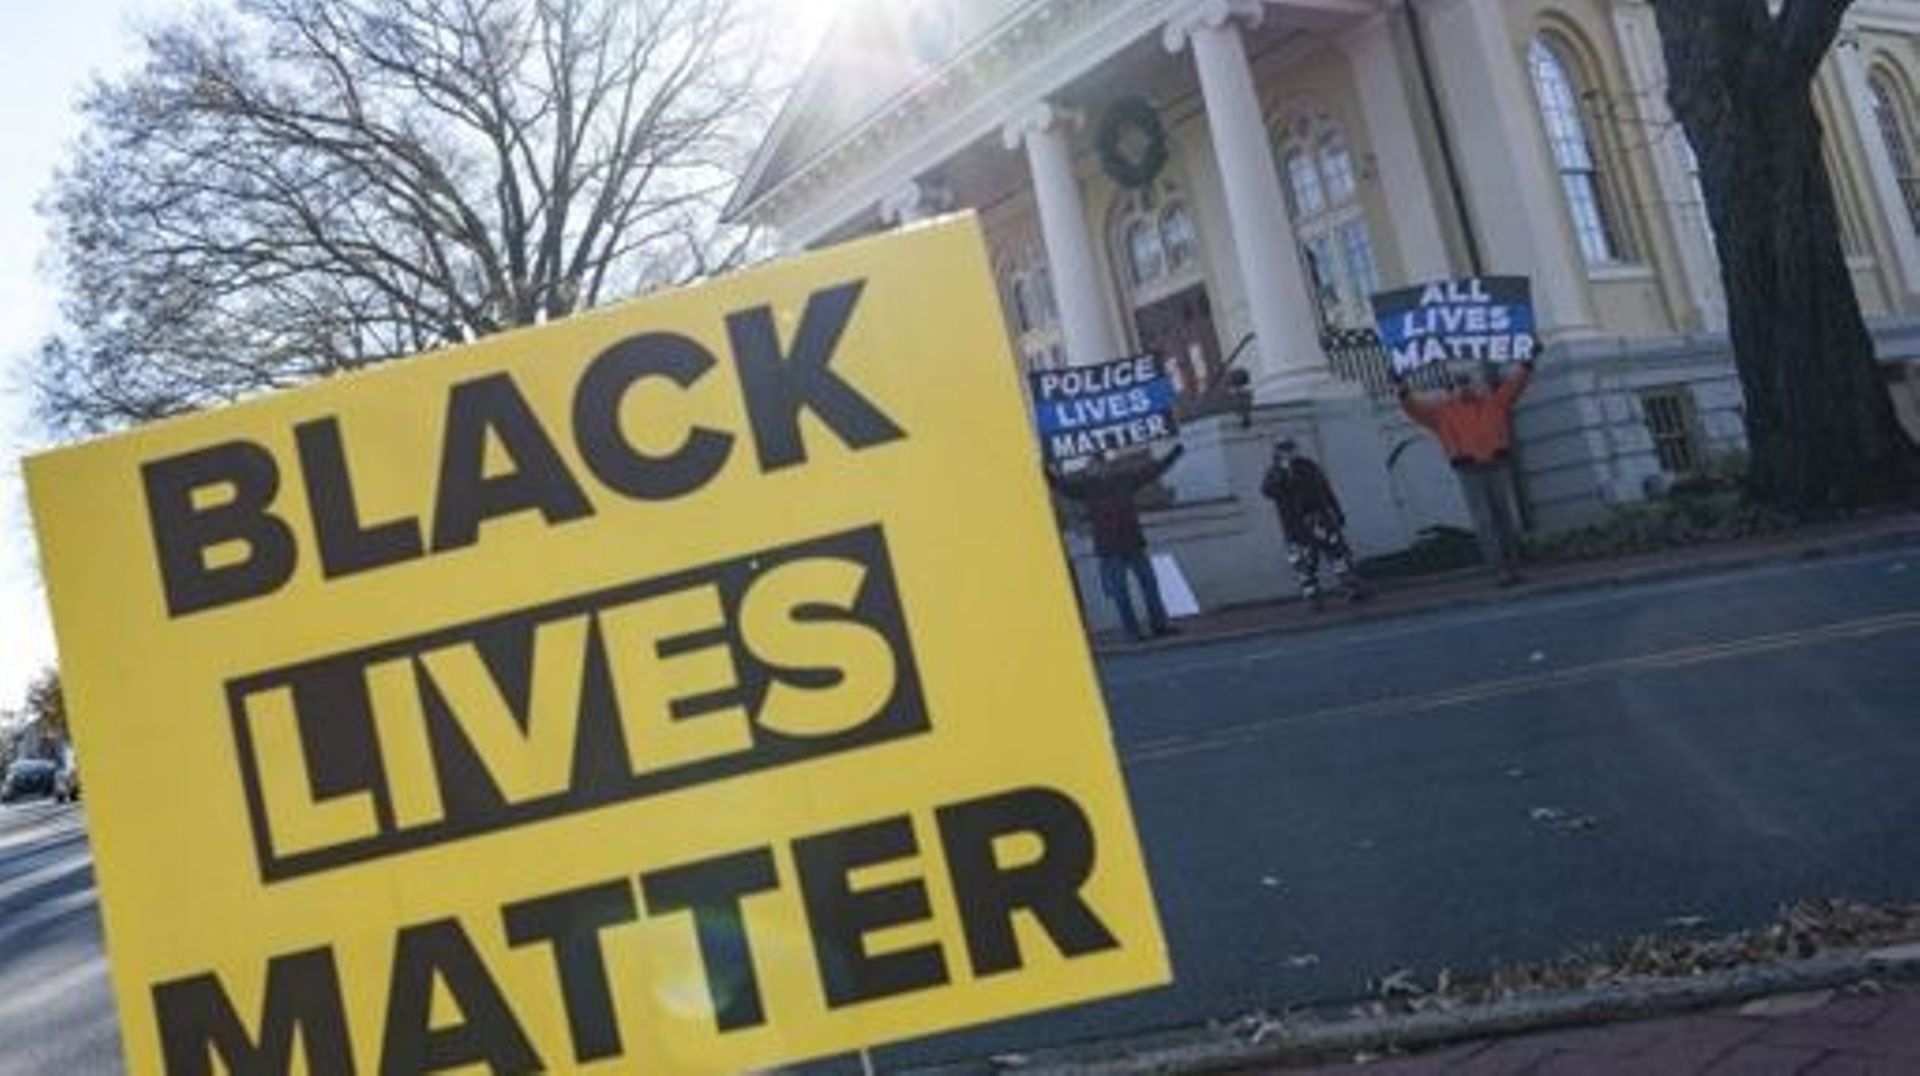 Des manifestants tenant des pancartes de protestation sur lesquelles on peut lire "Police Lives Matter" et "All Lives Matter" manifestent en face d'une manifestation "Black Lives Matter" sur la place de la ville à Warrenton, en Virginie, le 27 novembre 20